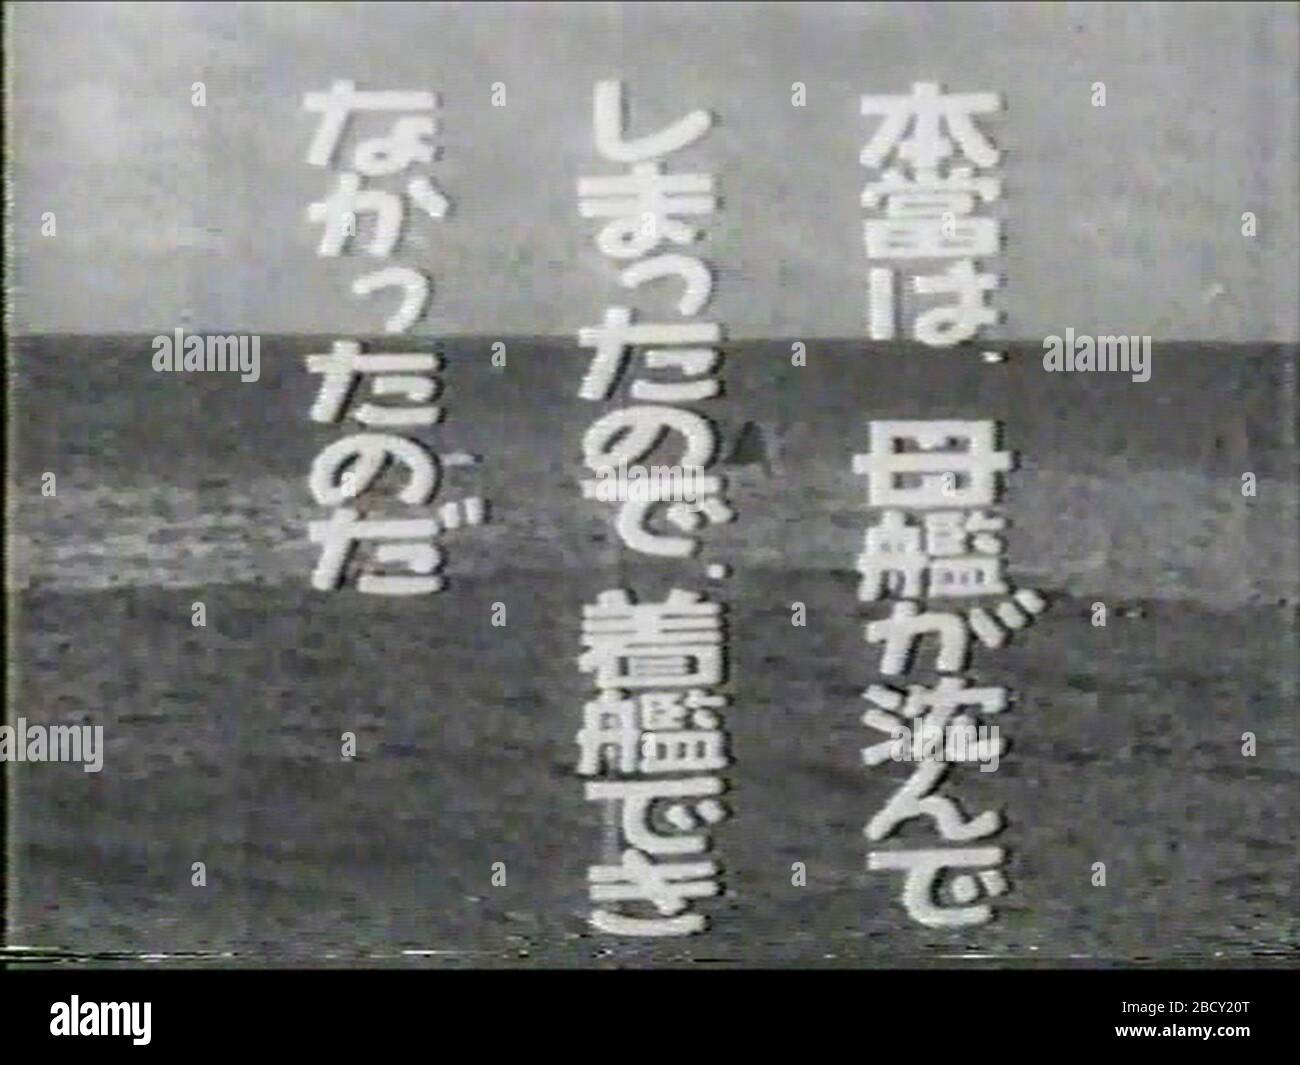 English Battle Off Cape Engano From A Japanese Tragedy 1946 Japanese Film 日本語 映画 日本の悲劇 エンガノ岬沖海戦で 母艦を失って不時着水する日本機 オリジナル 日本ニュース 第232号では 燃料が尽きるまで頑張って飛んだ という趣旨の